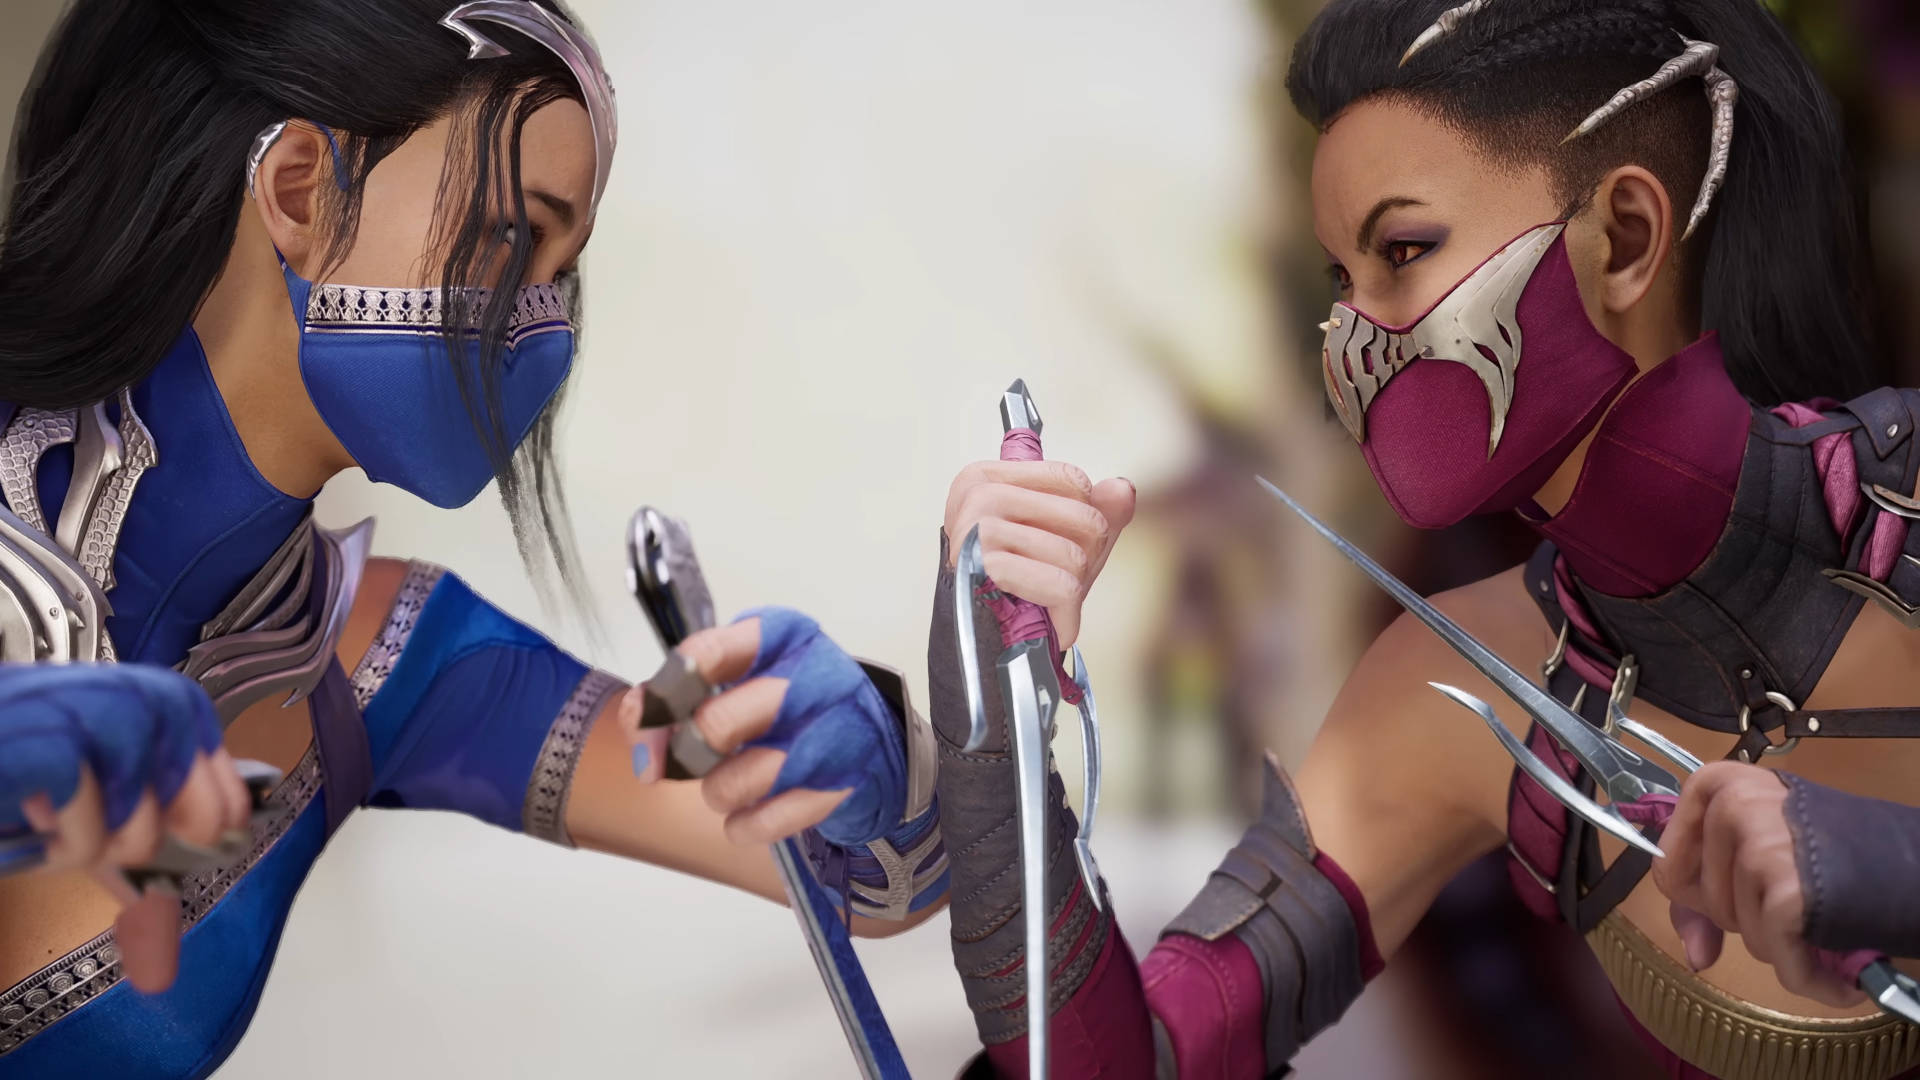 تم تأكيد Kitana و Mileena شخصيات Mortal Kombat 1 ، الذين يصطدمان قبل بدء المعركة